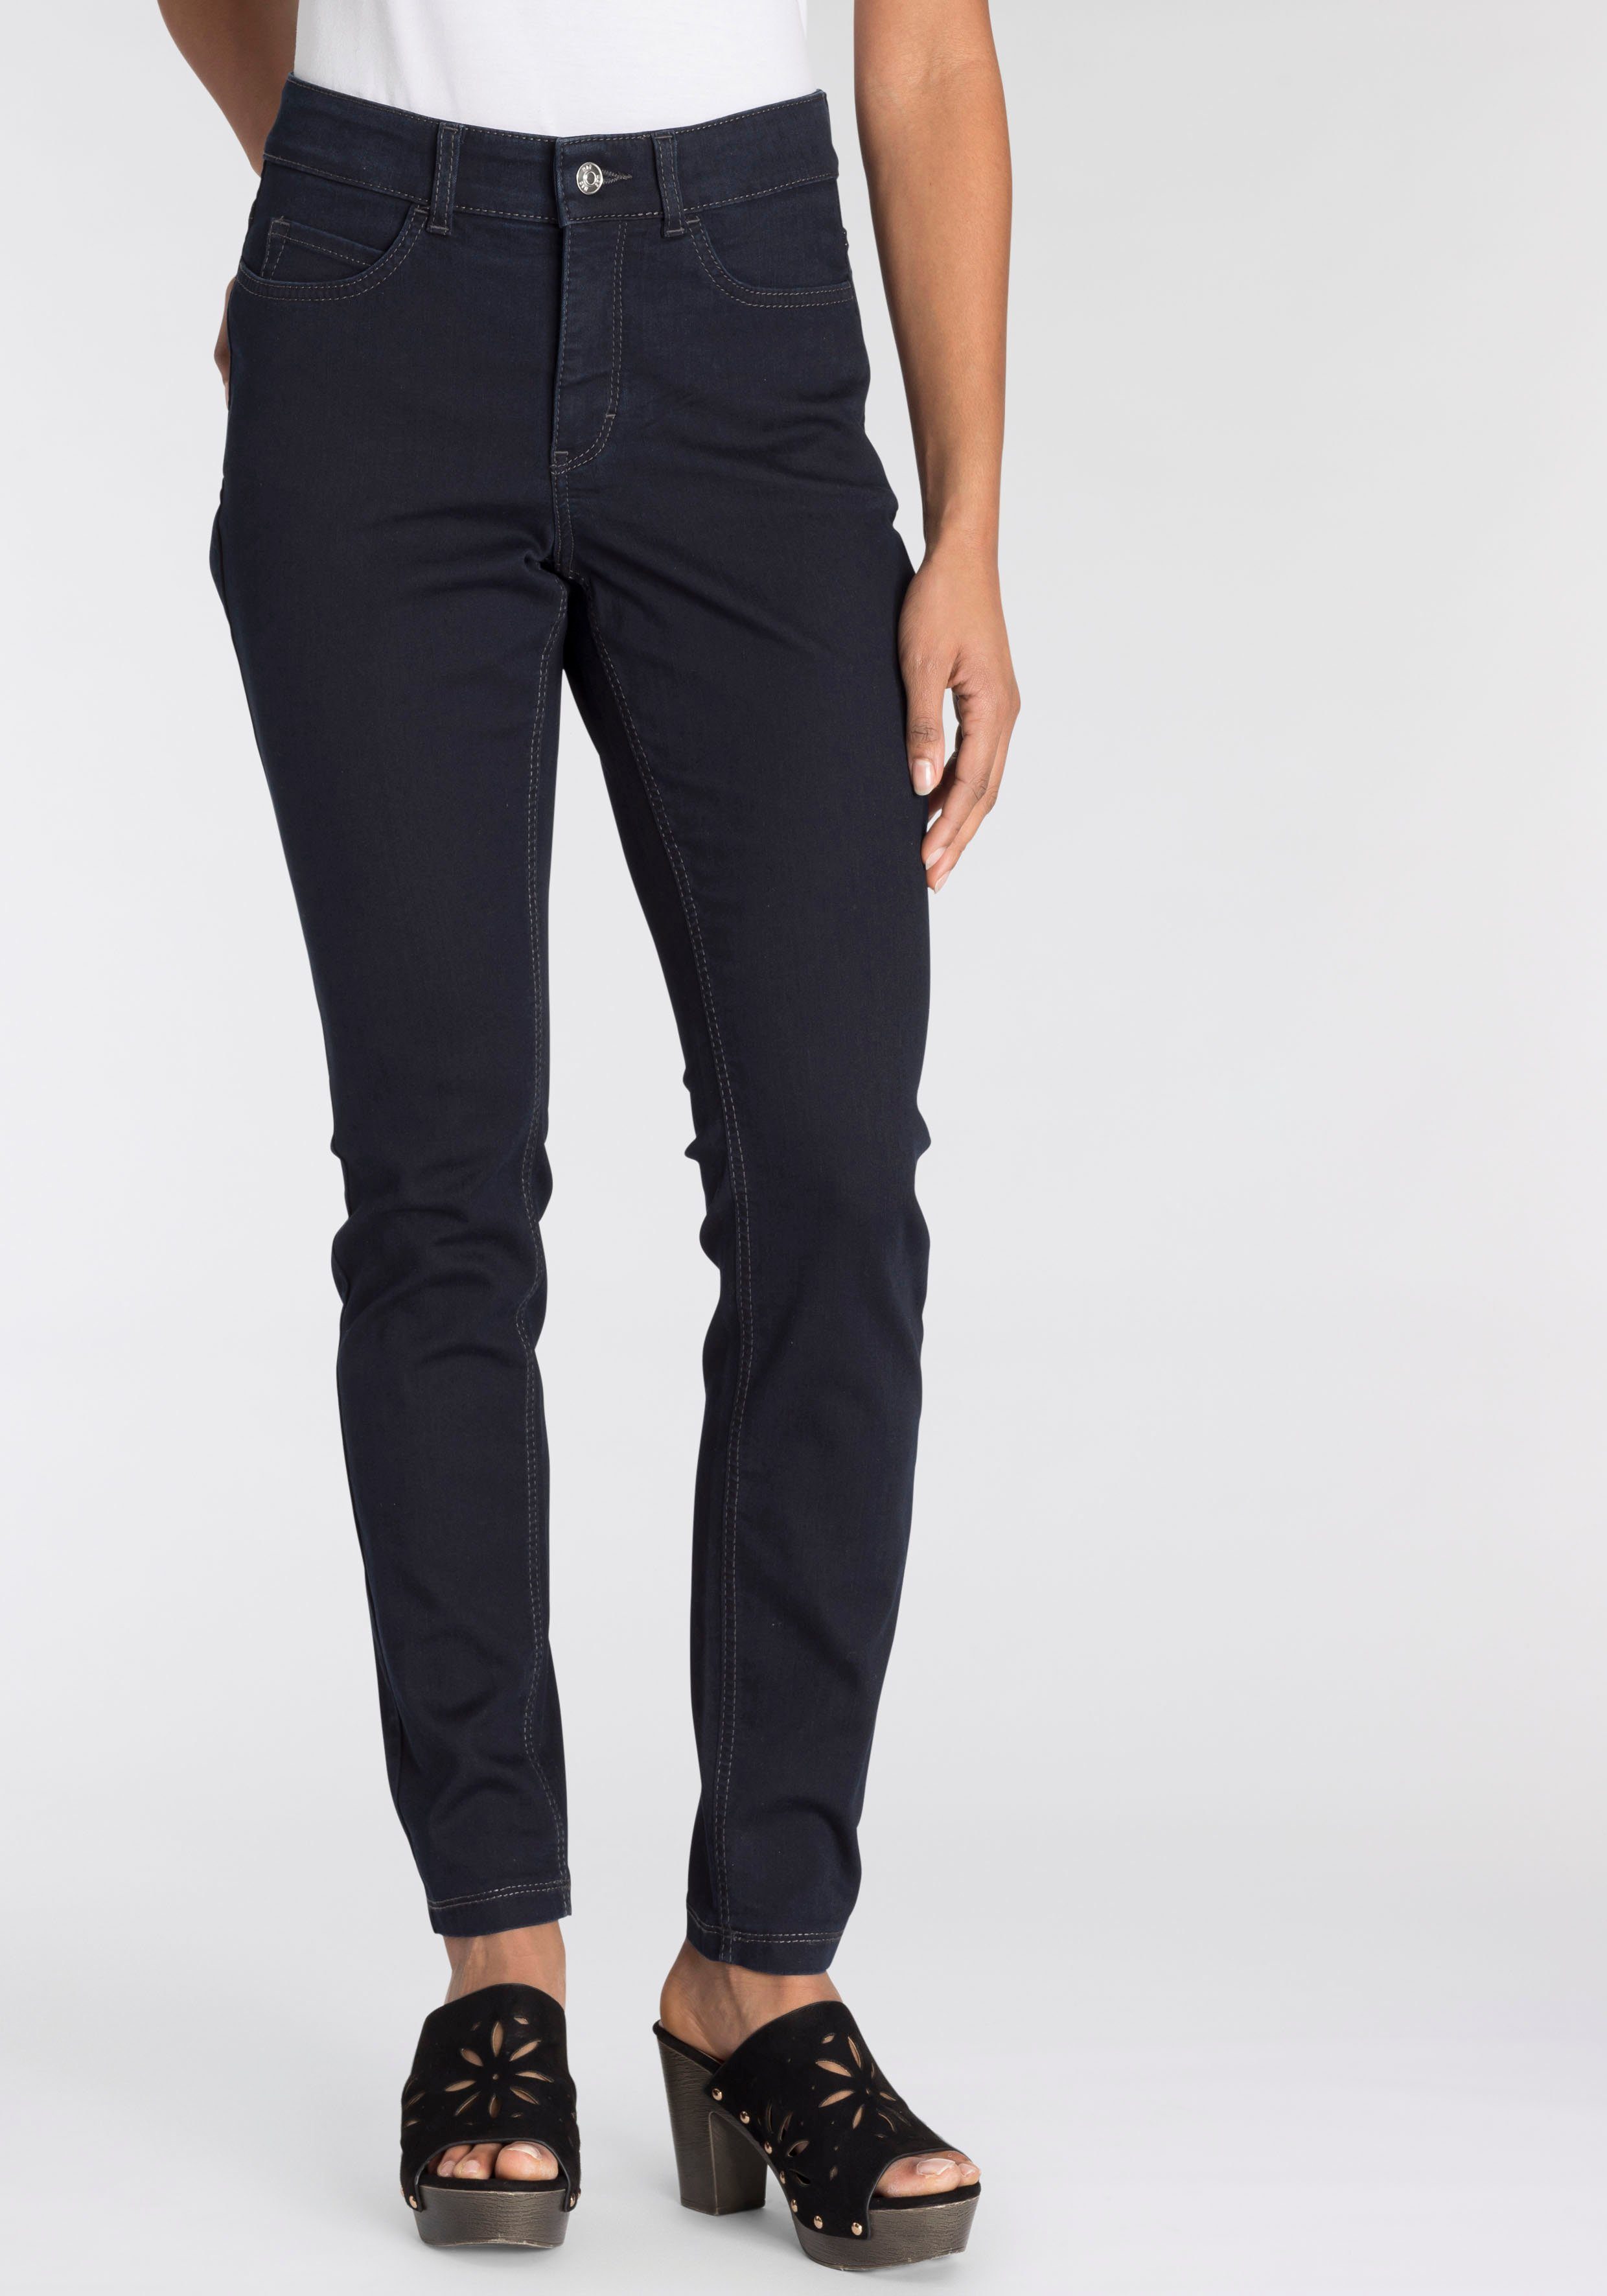 MAC Skinny-fit-Jeans Hiperstretch-Skinny Power-Stretch sitzt blue ganzen Tag rinsed bequem Qualität dark den